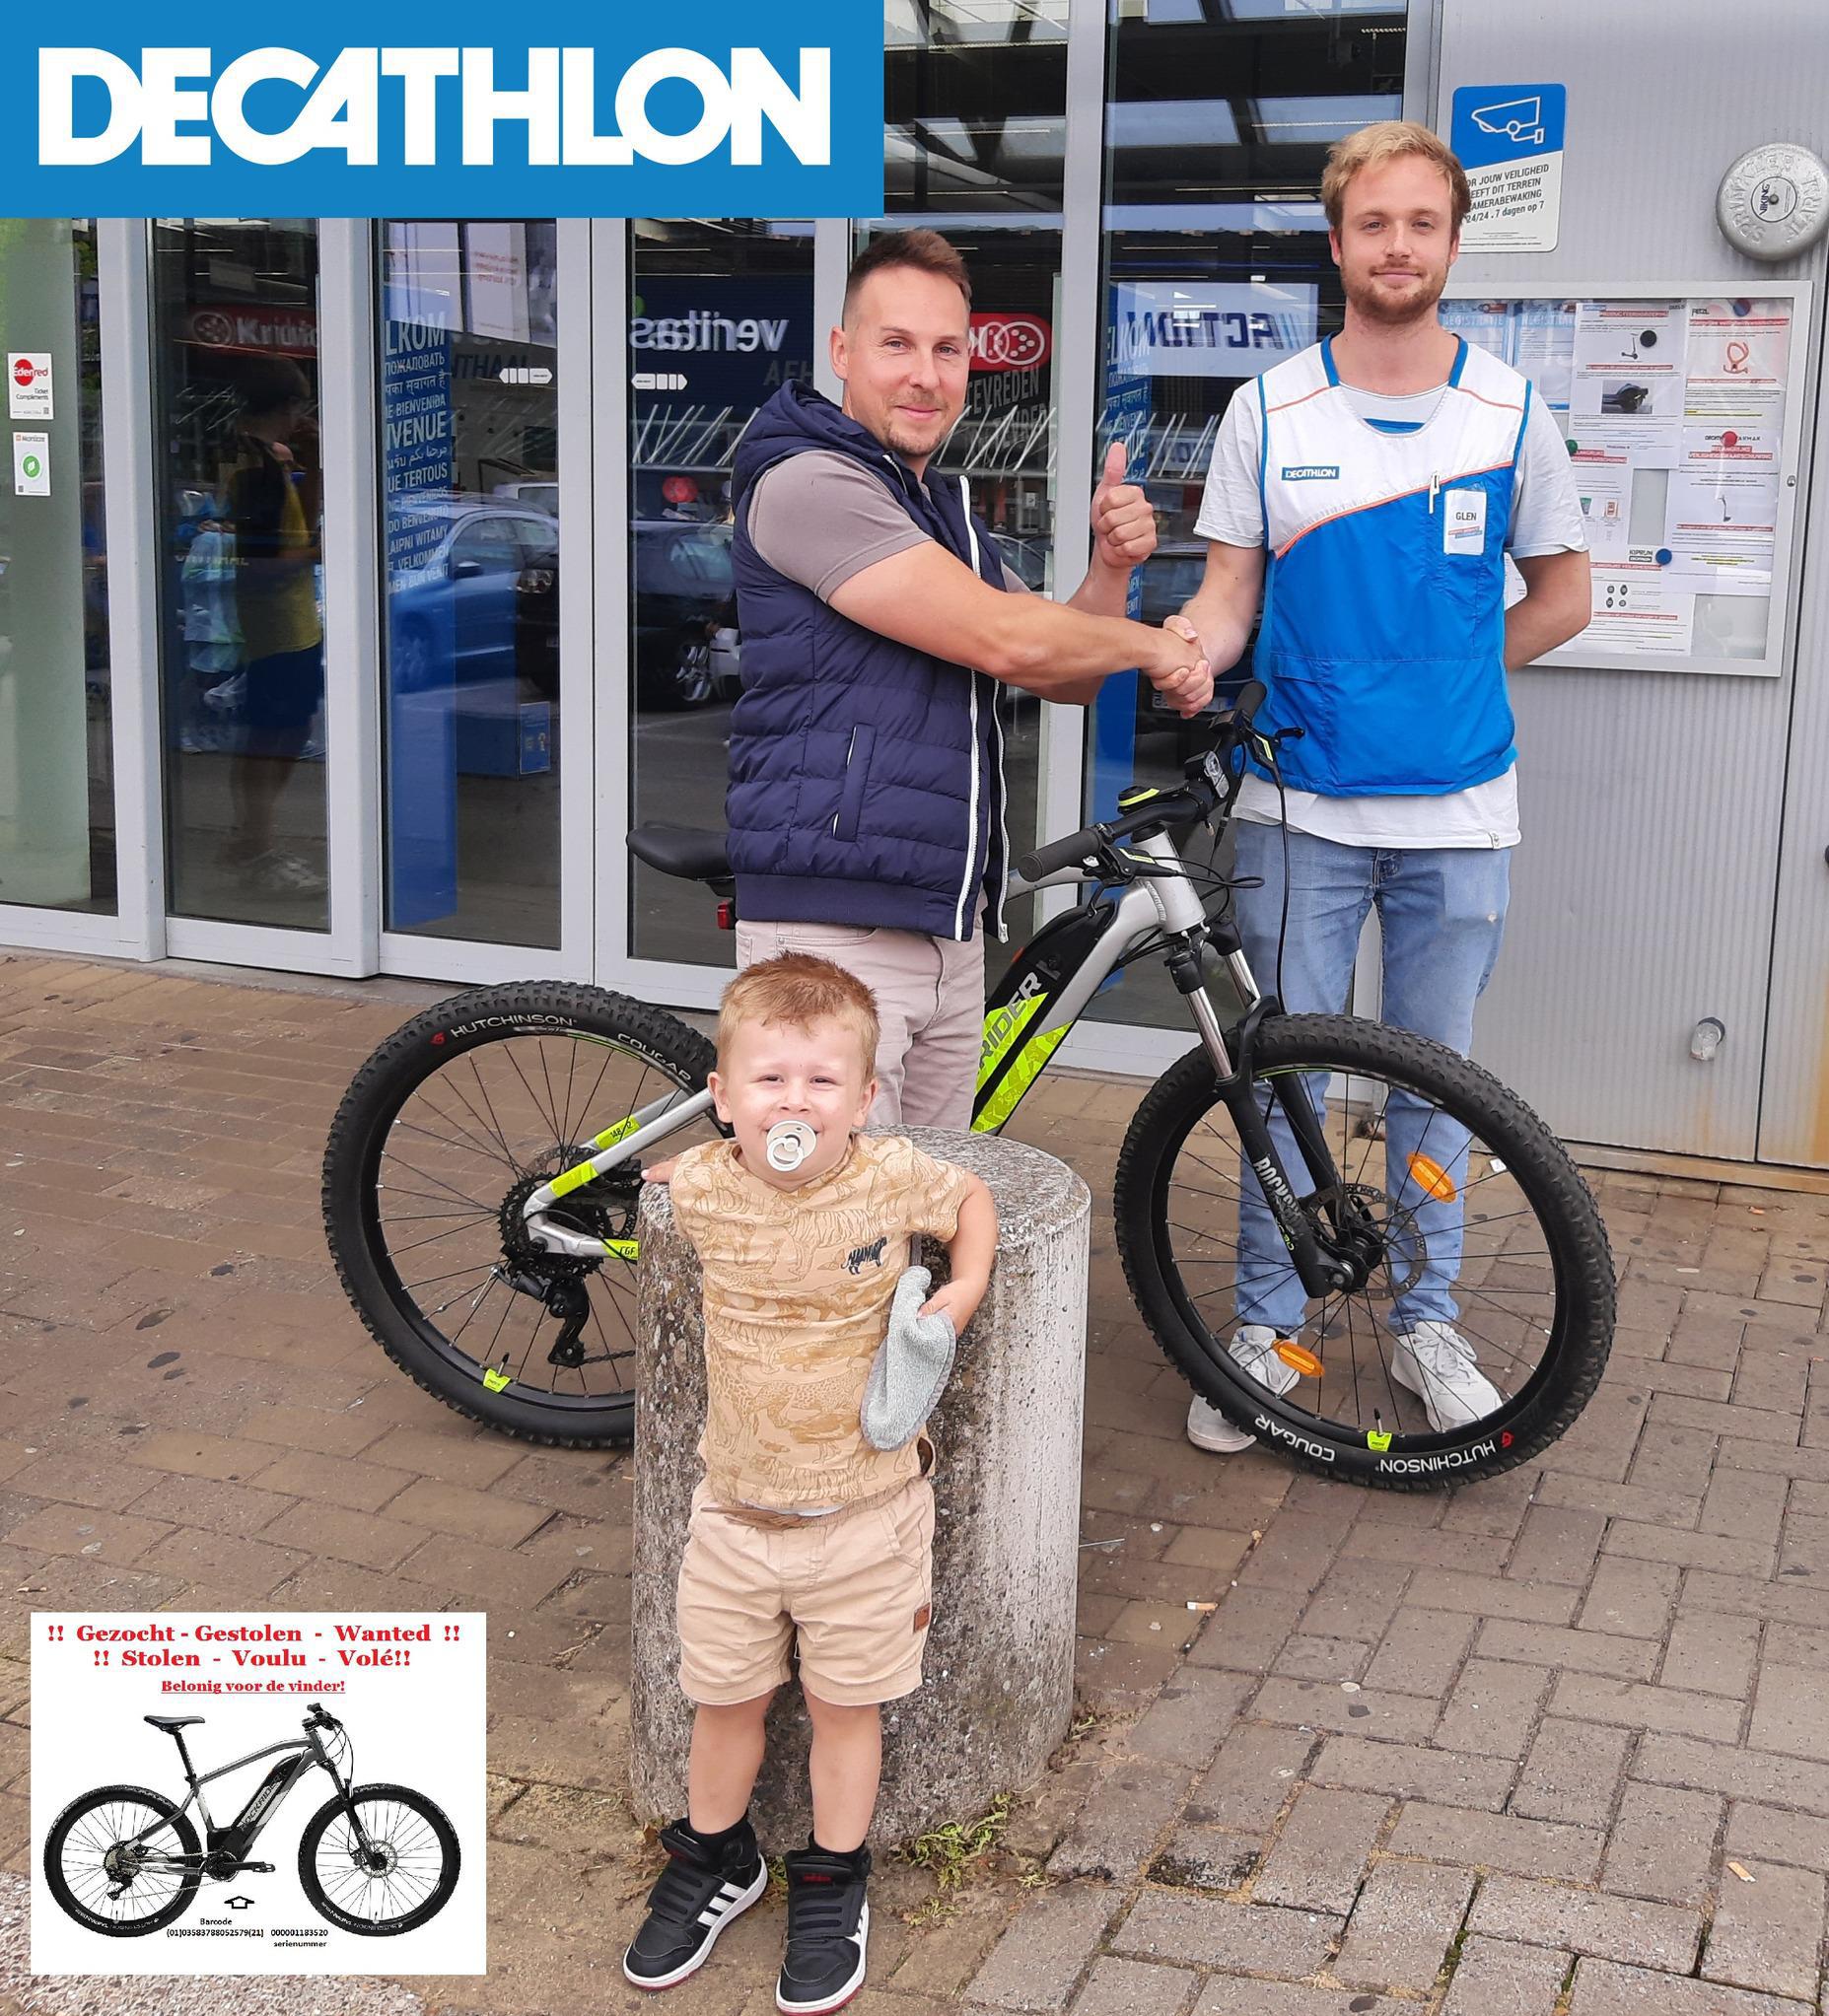 ik ben gelukkig Compliment mager Decathlon geeft Erwin nieuwe mountainbike in bruikleen nadat vorige was  gestolen in winkel: “Al een uur gaan fietsen” | Gazet van Antwerpen Mobile